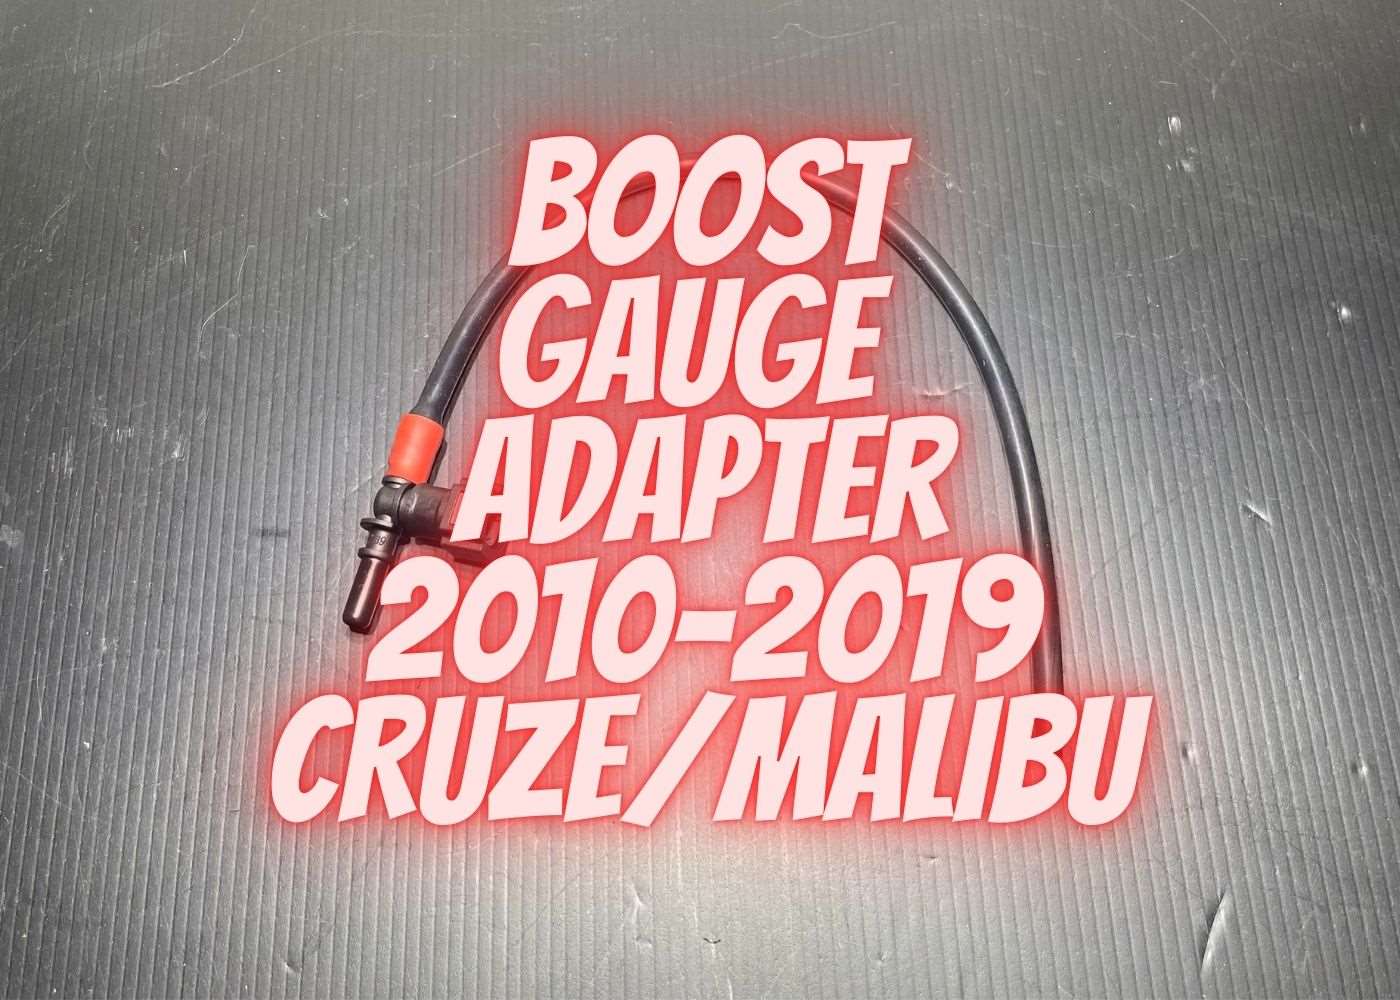 Boost Gauge Adapter 2010-2019 CRUZE  Malibu